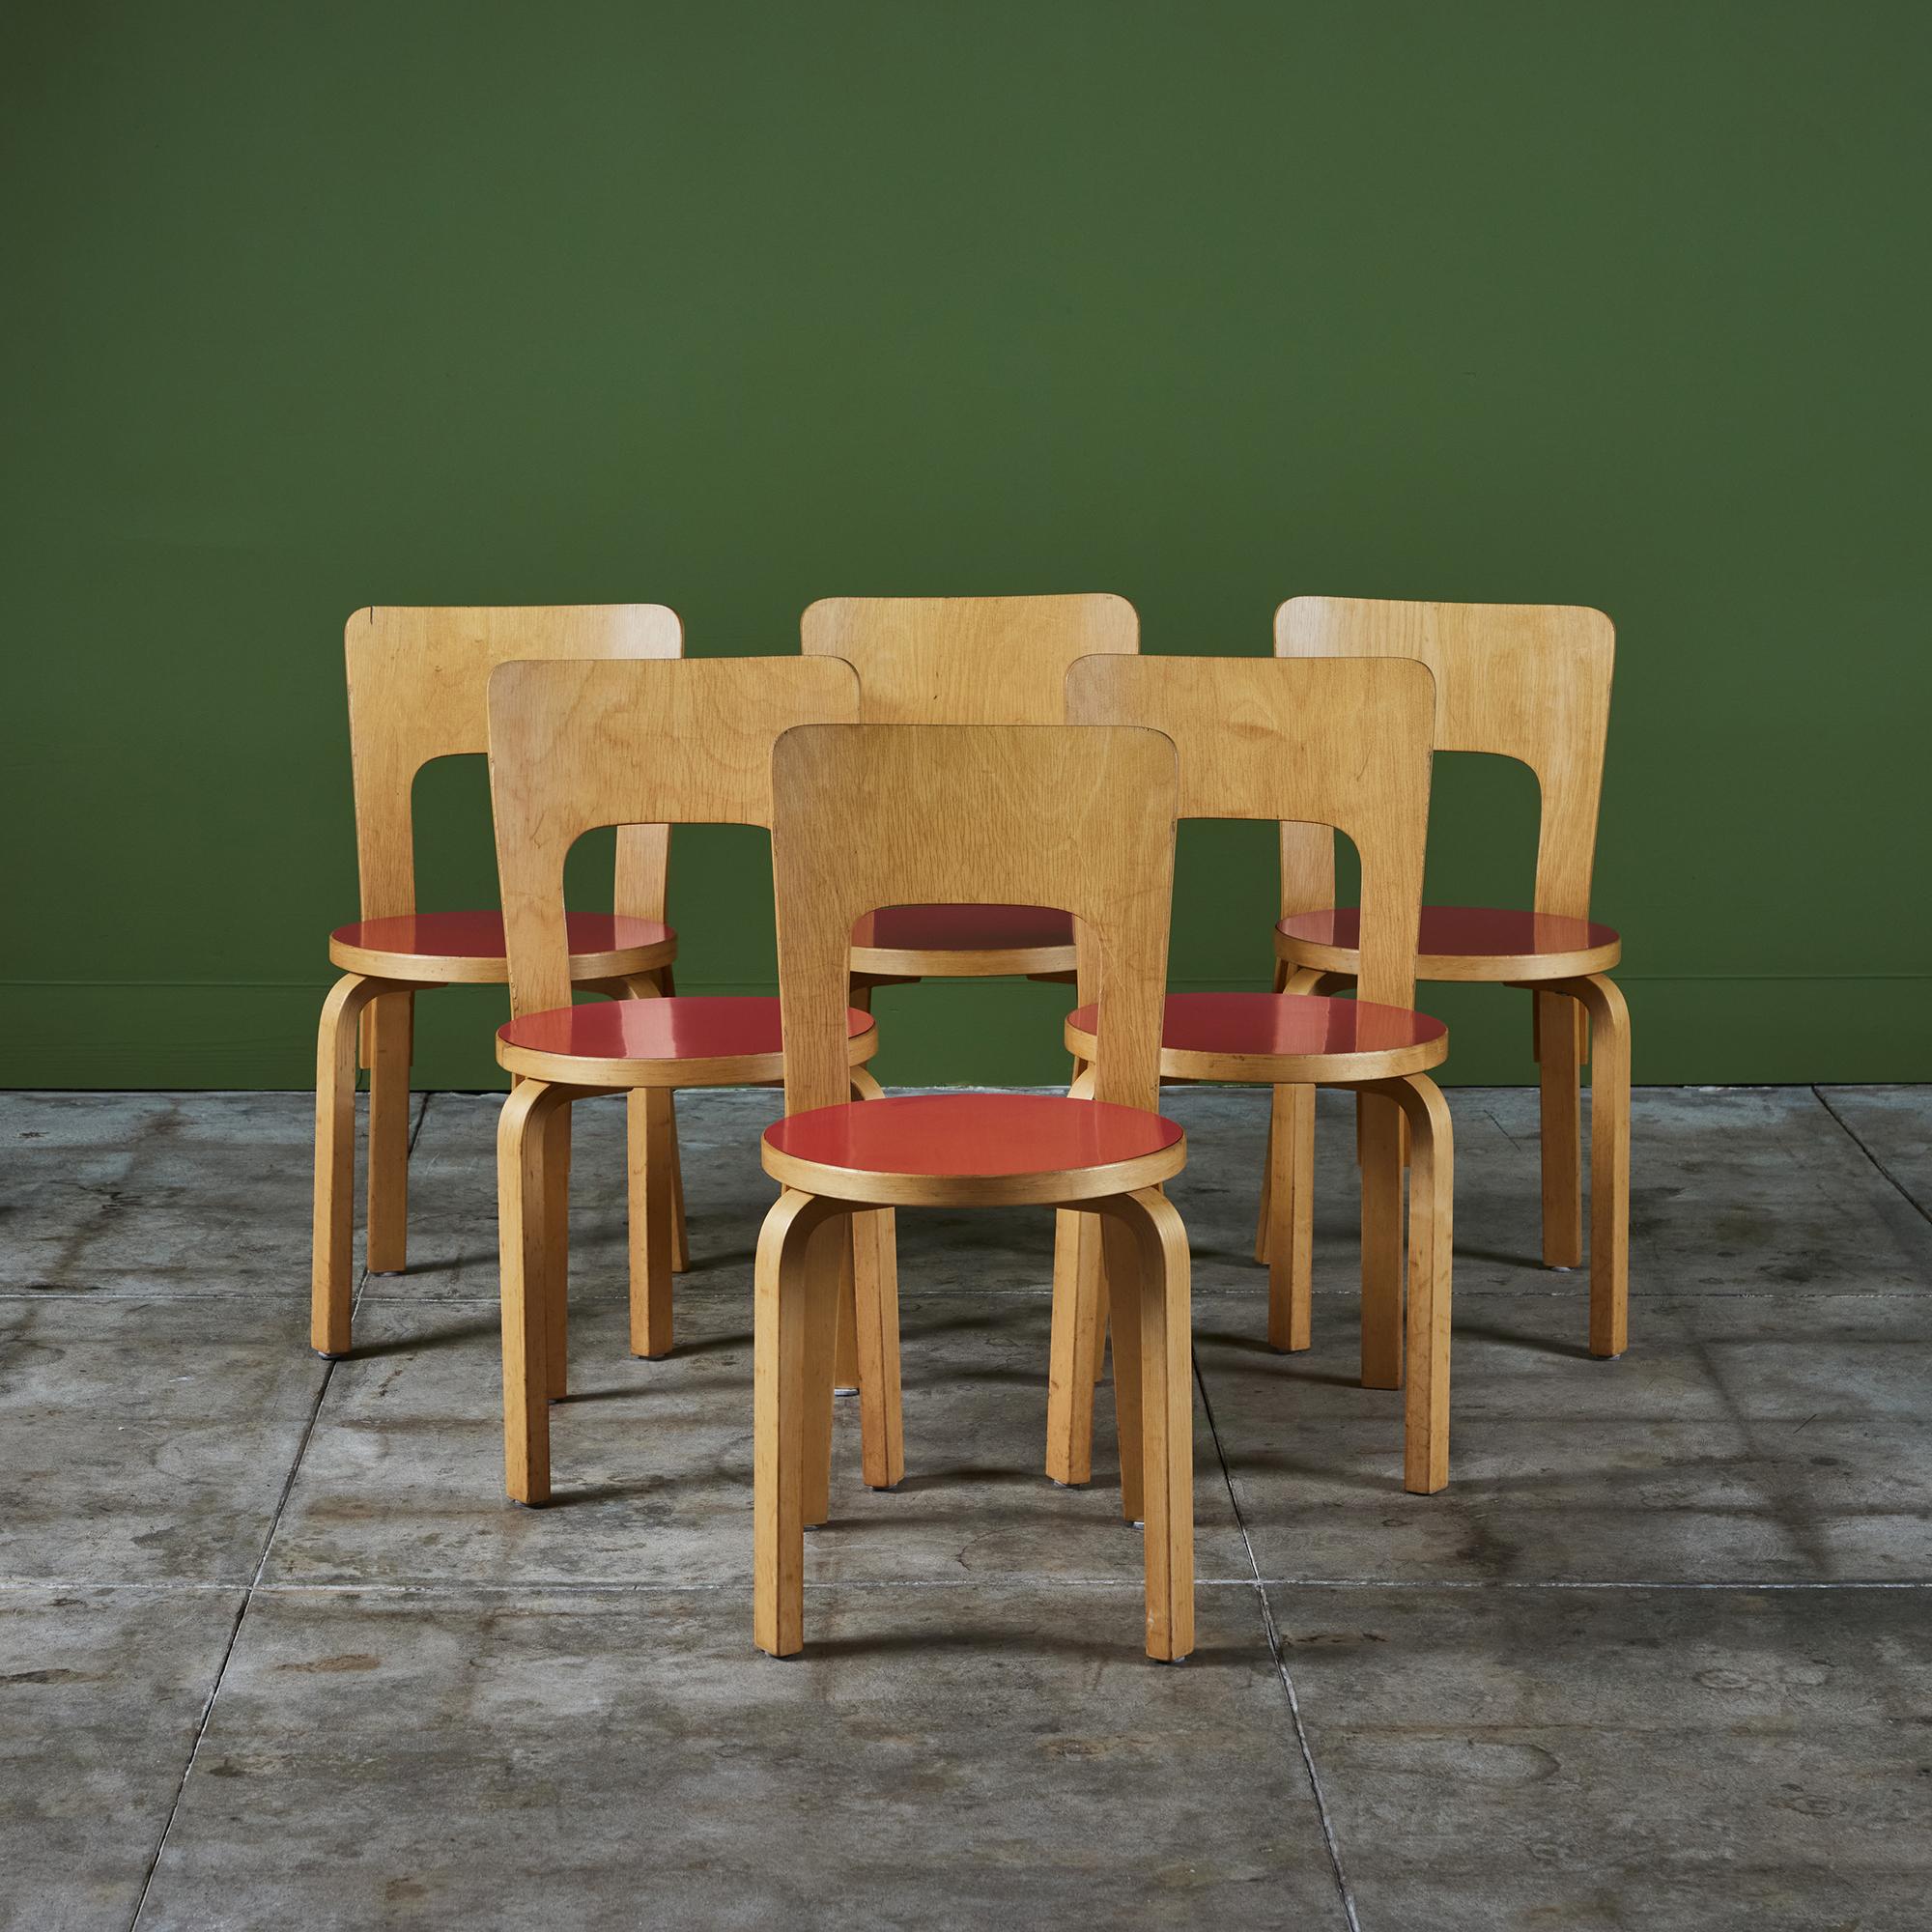 Der von Alvar Aalto entworfene und in den 1950er Jahren hergestellte Esszimmerstuhl Model 66 von Artek verfügt über honigfarbene Birkenbeine und eine hohe, gebogene Rückenlehne aus Sperrholz. Der Sitz besteht aus rundem Birkenholz mit rotem Laminat